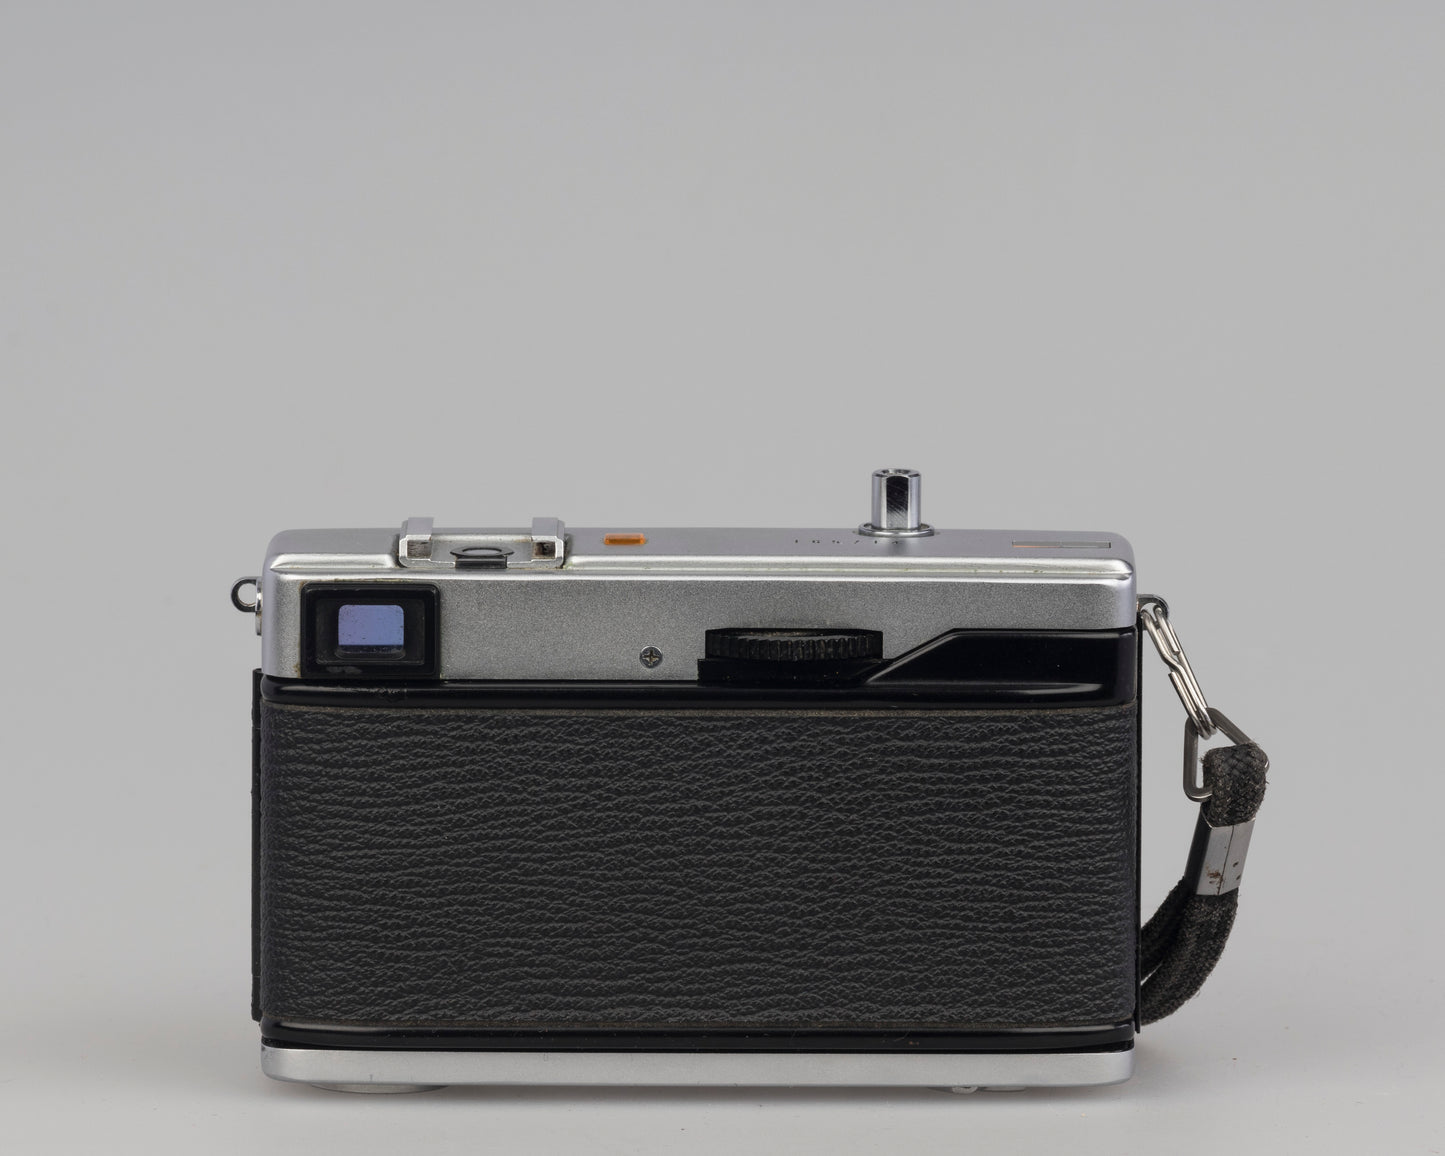 Appareil photo télémétrique 35 mm Olympus 35 ECR avec boîte et étui d'origine